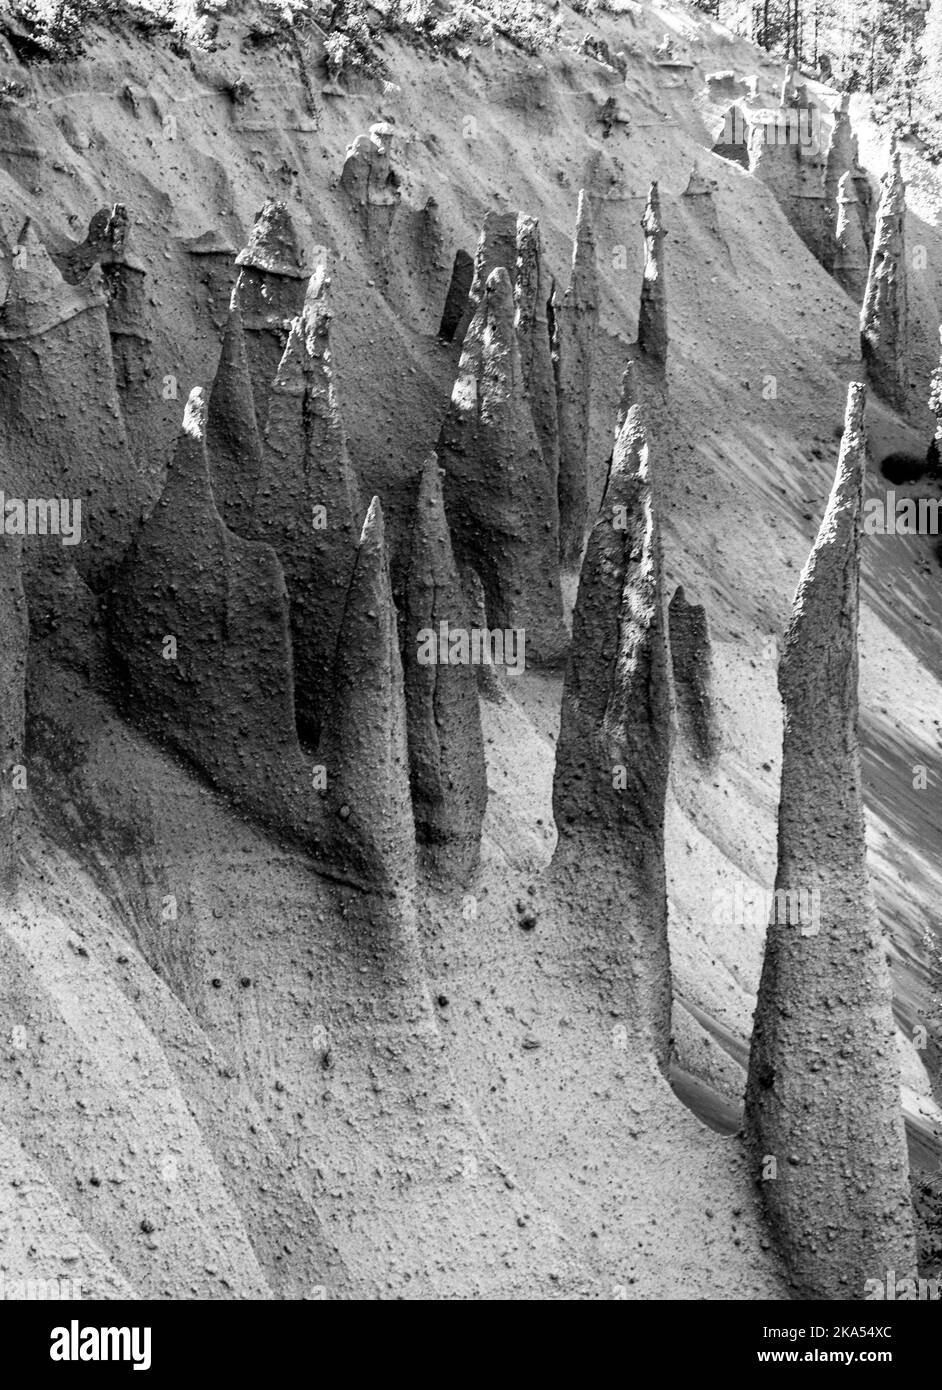 Los pináculos, respiraderos volcánicos que abrazan el borde del lago del cráter en Oregon Park. Con un bosque de pinos creciendo alrededor de las agujas puntiagudas. Foto de stock